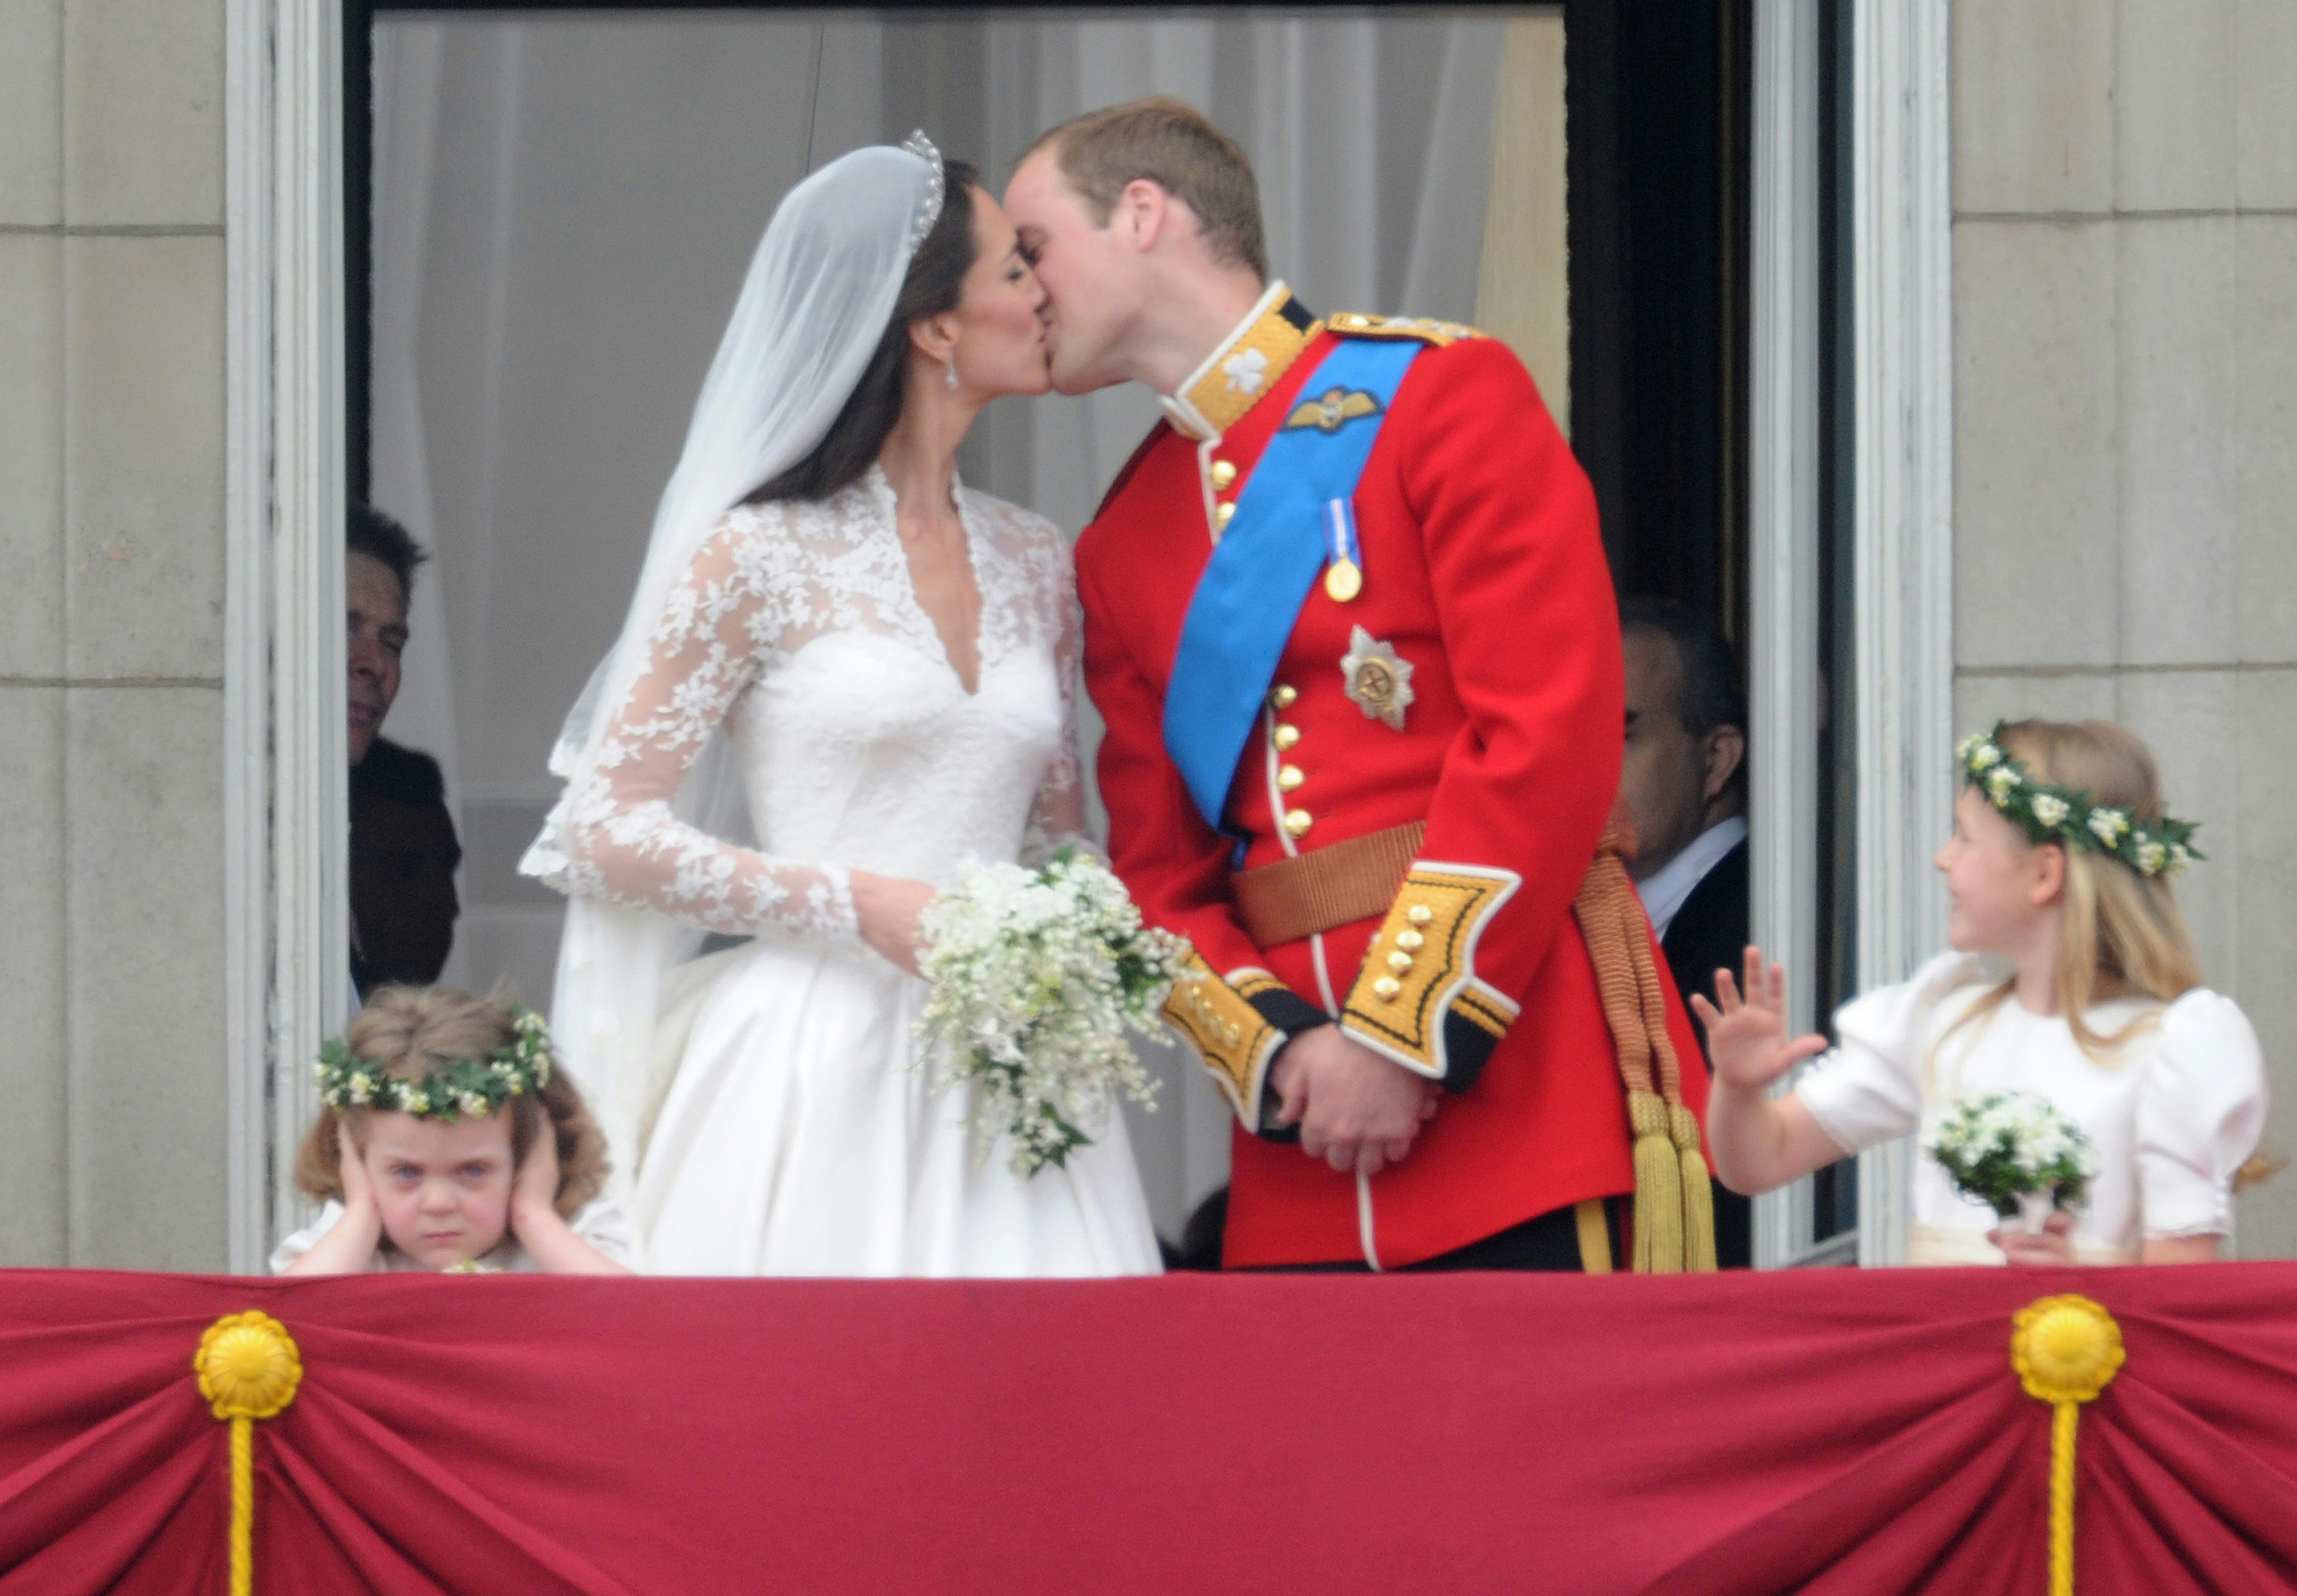 indrømmer: Så akavet det første møde med prins William | SE og HØR